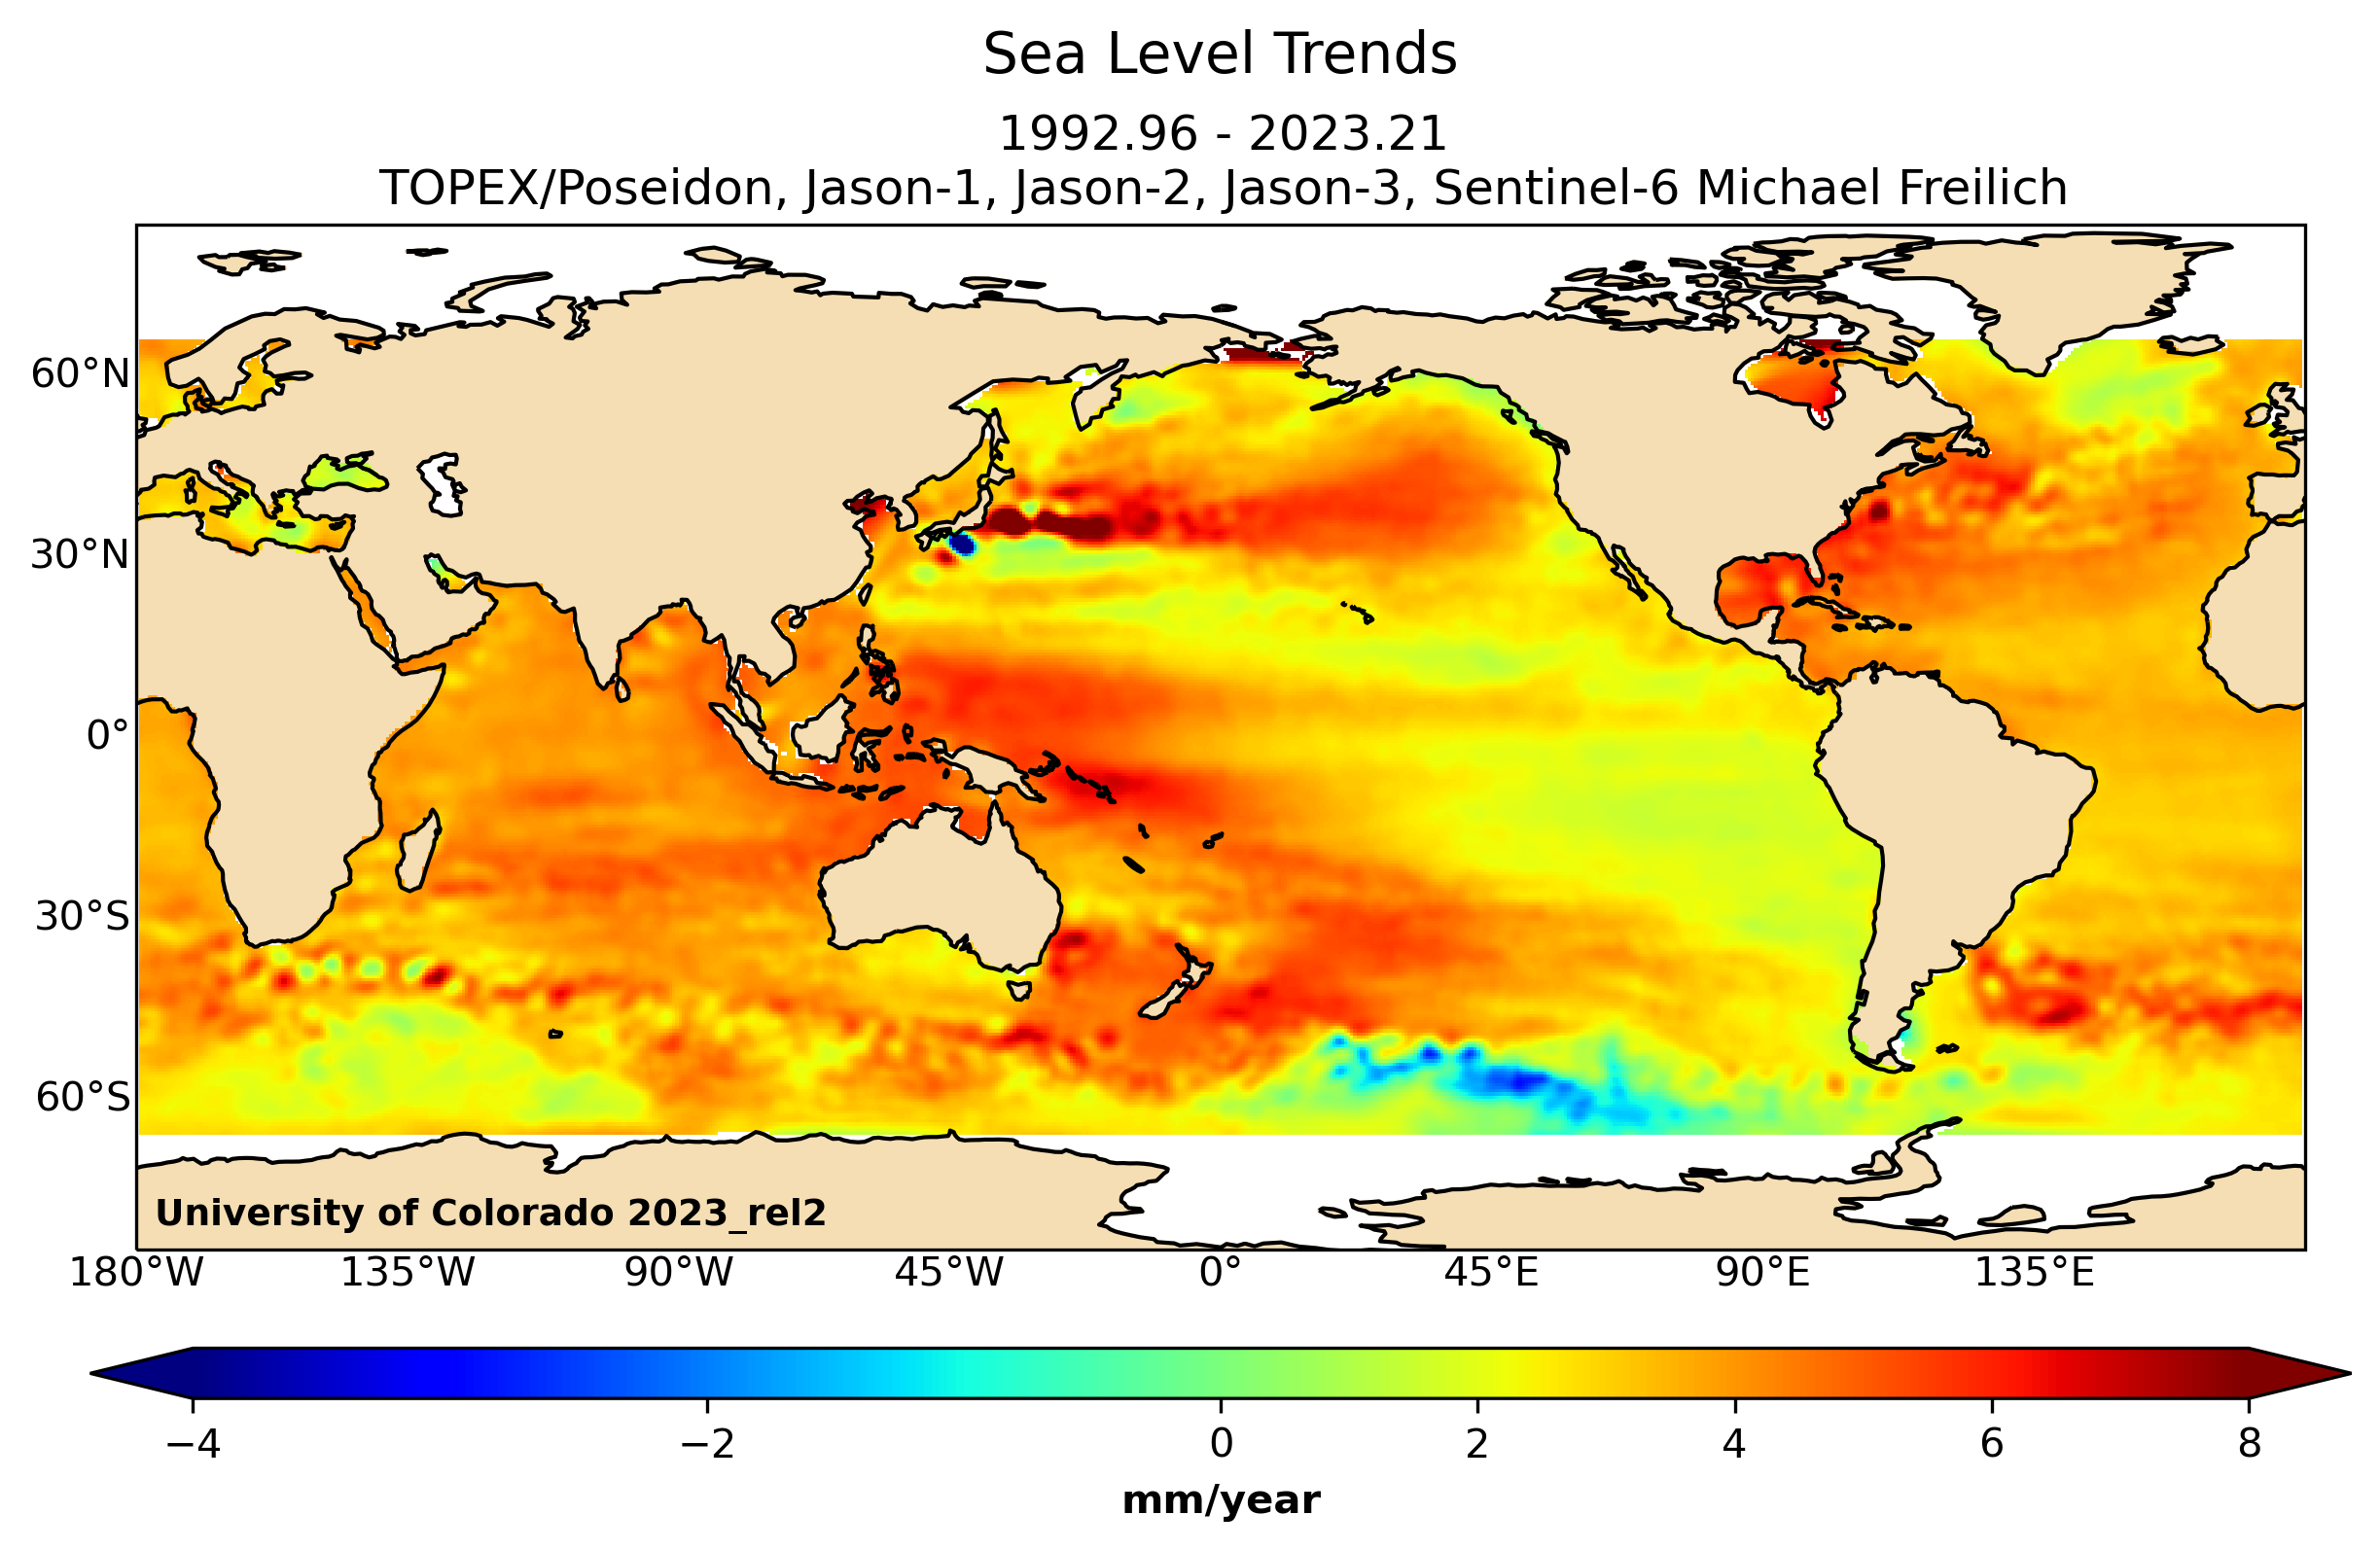 NASA Sea Level Change Portal